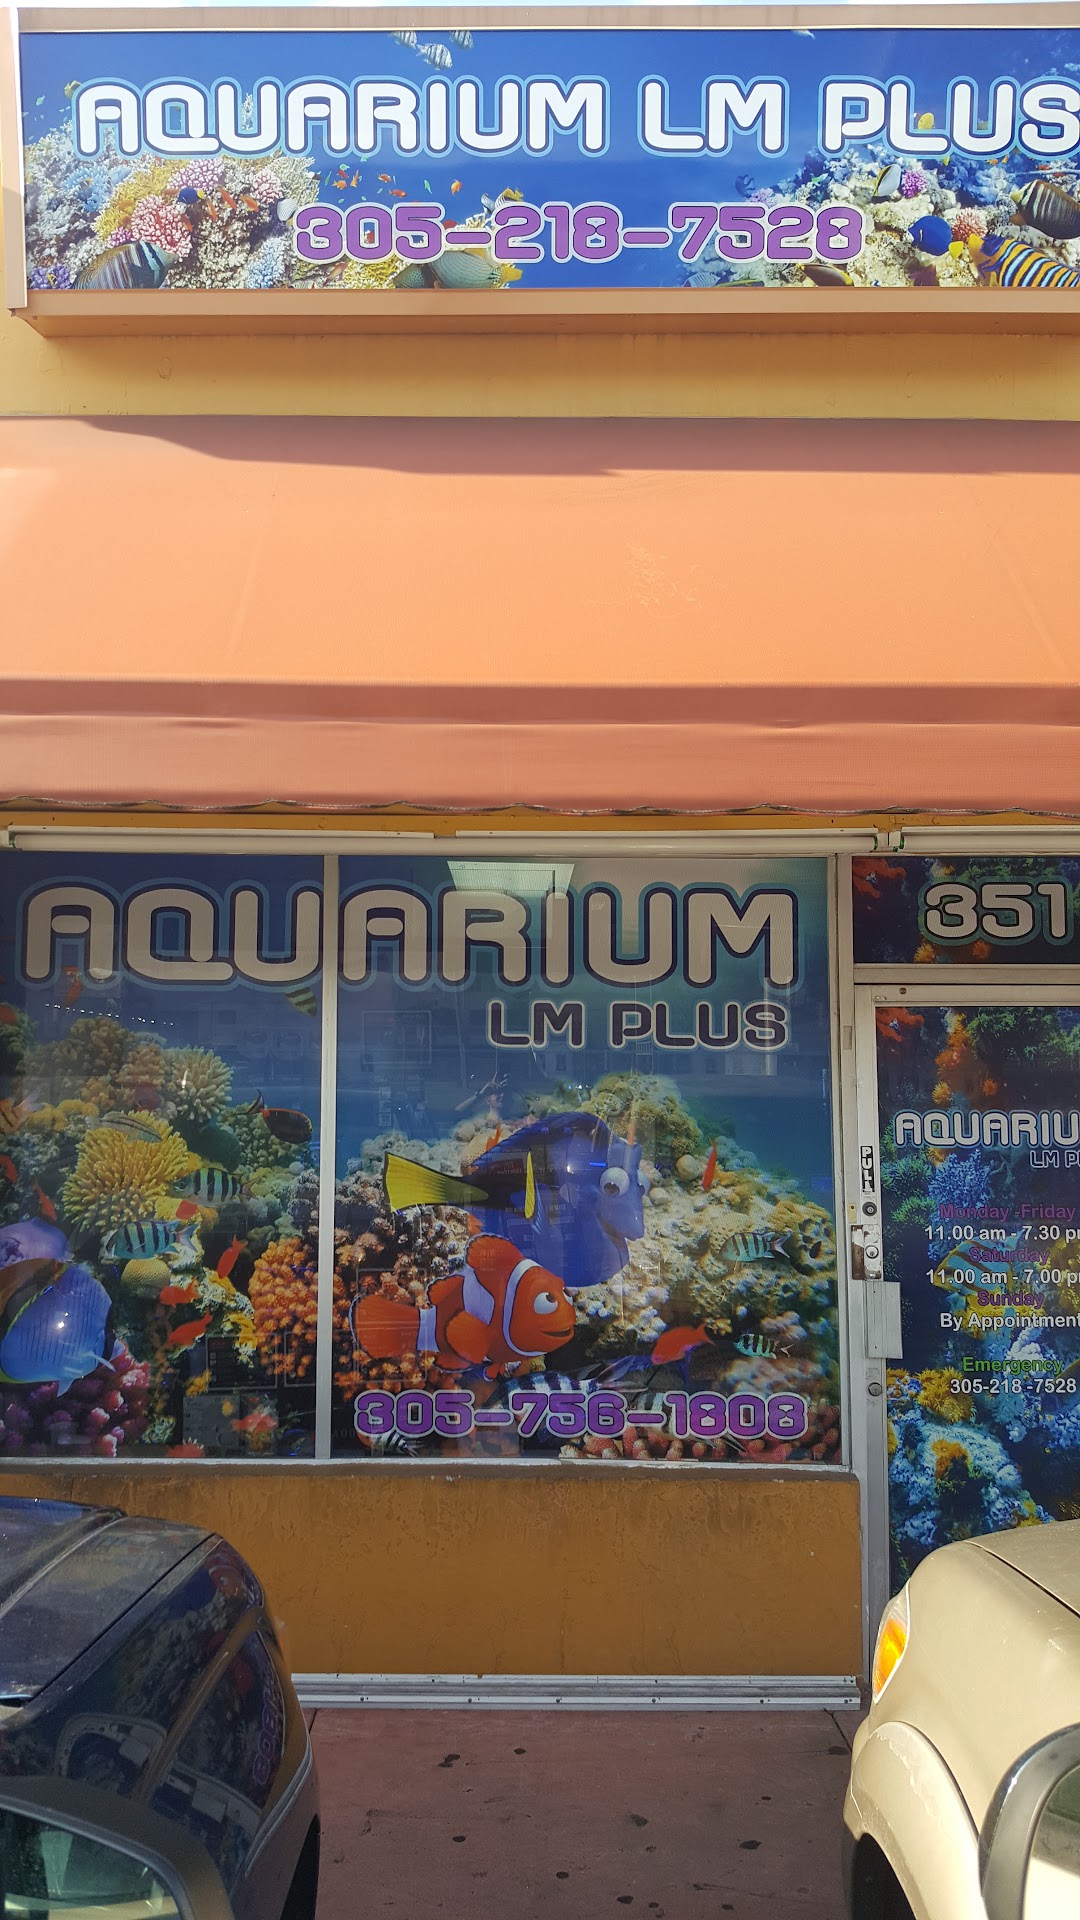 Aquarium LM Plus